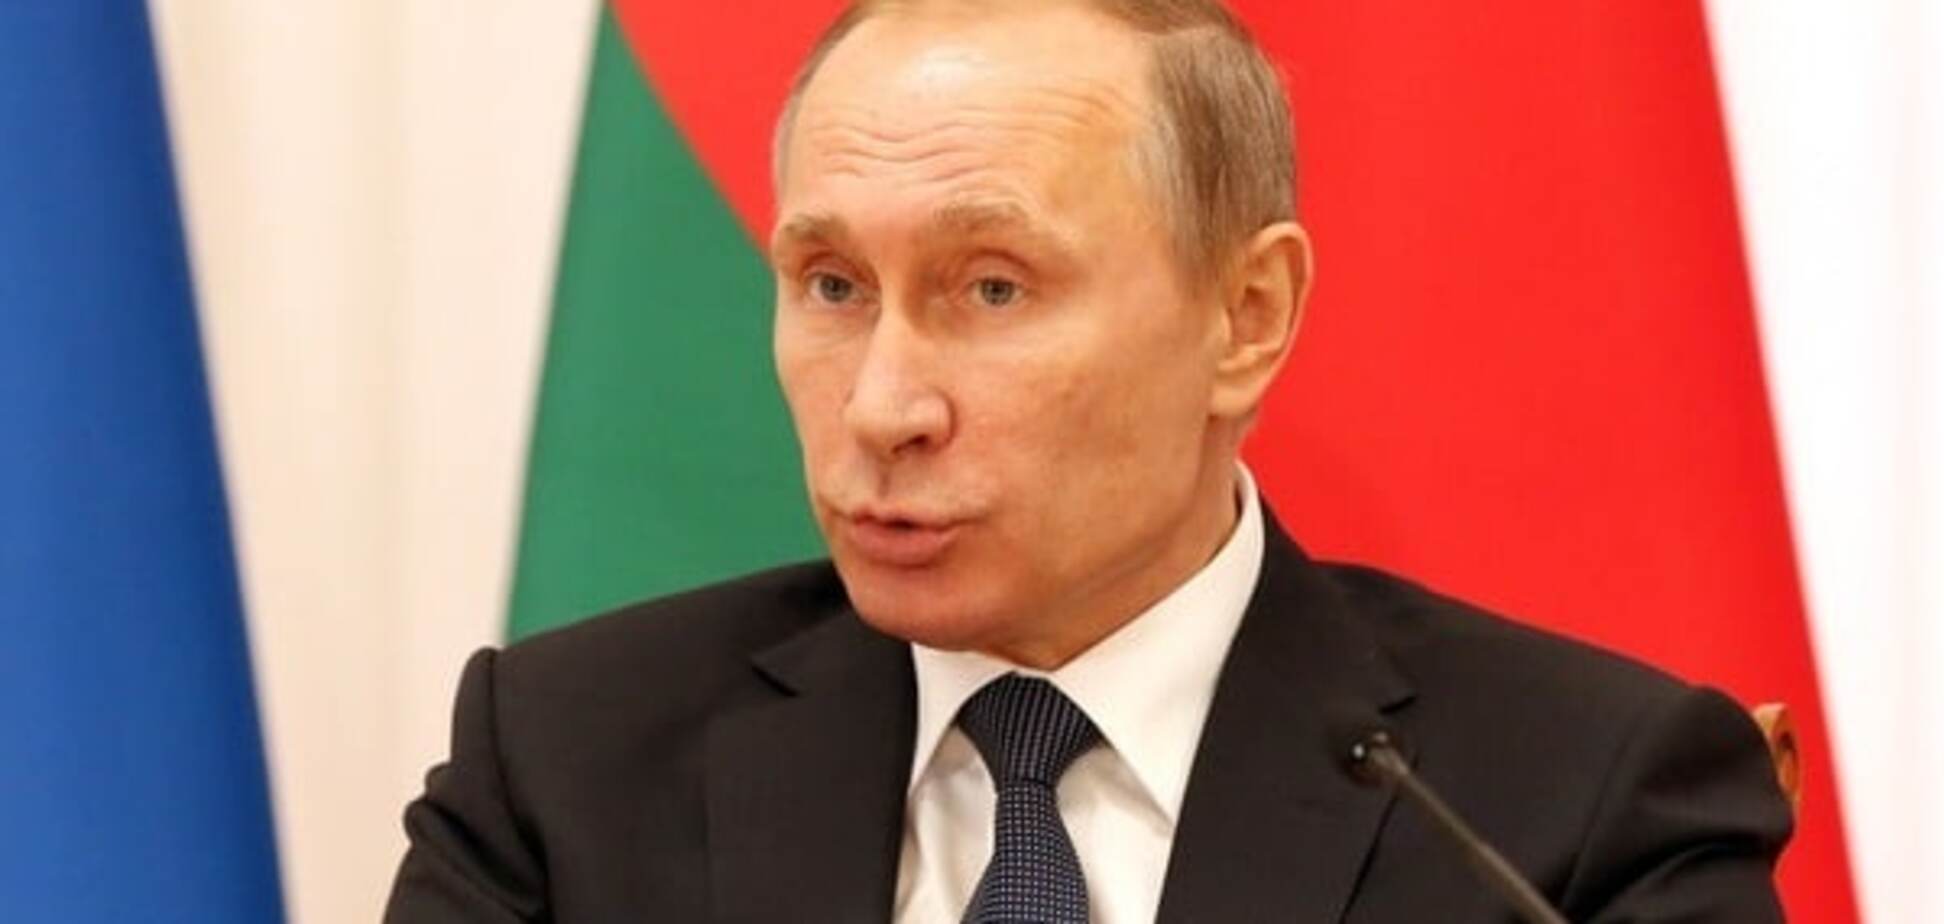 'Сирийский вопрос': европейские лидеры будут 'давить' на Путина